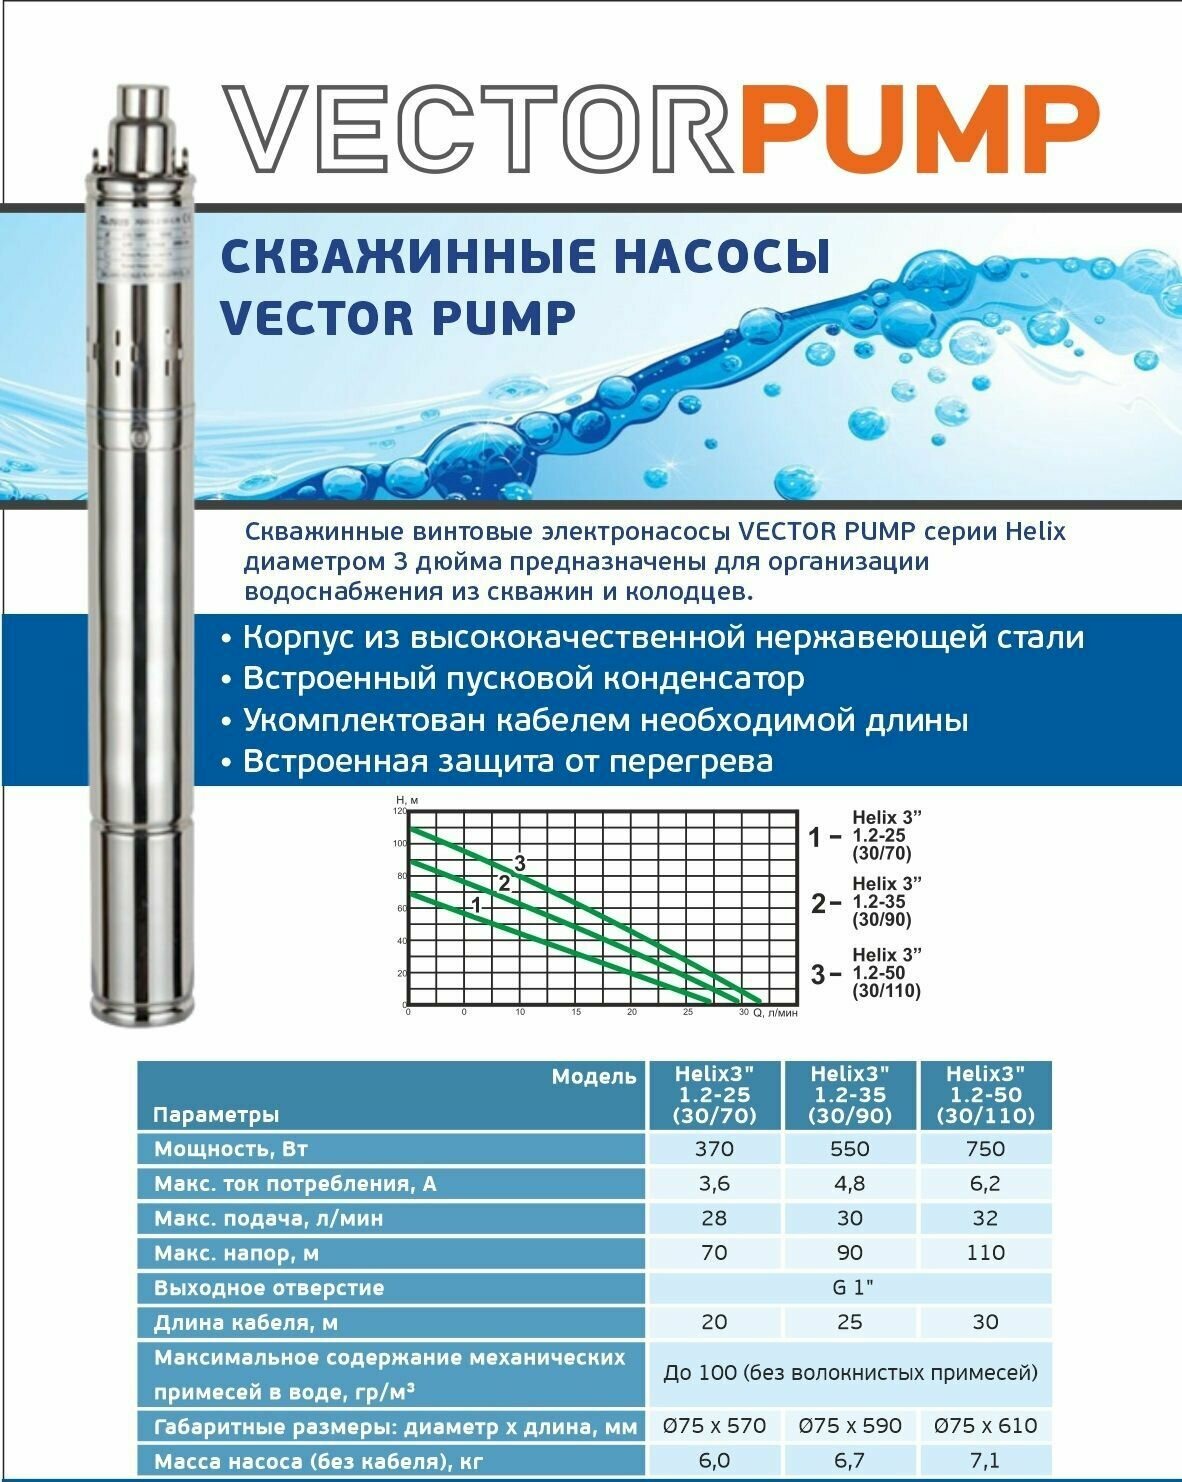 Электронасос винтовой, погружной VectorPump Helix 3" 1.2-50 (30/110)